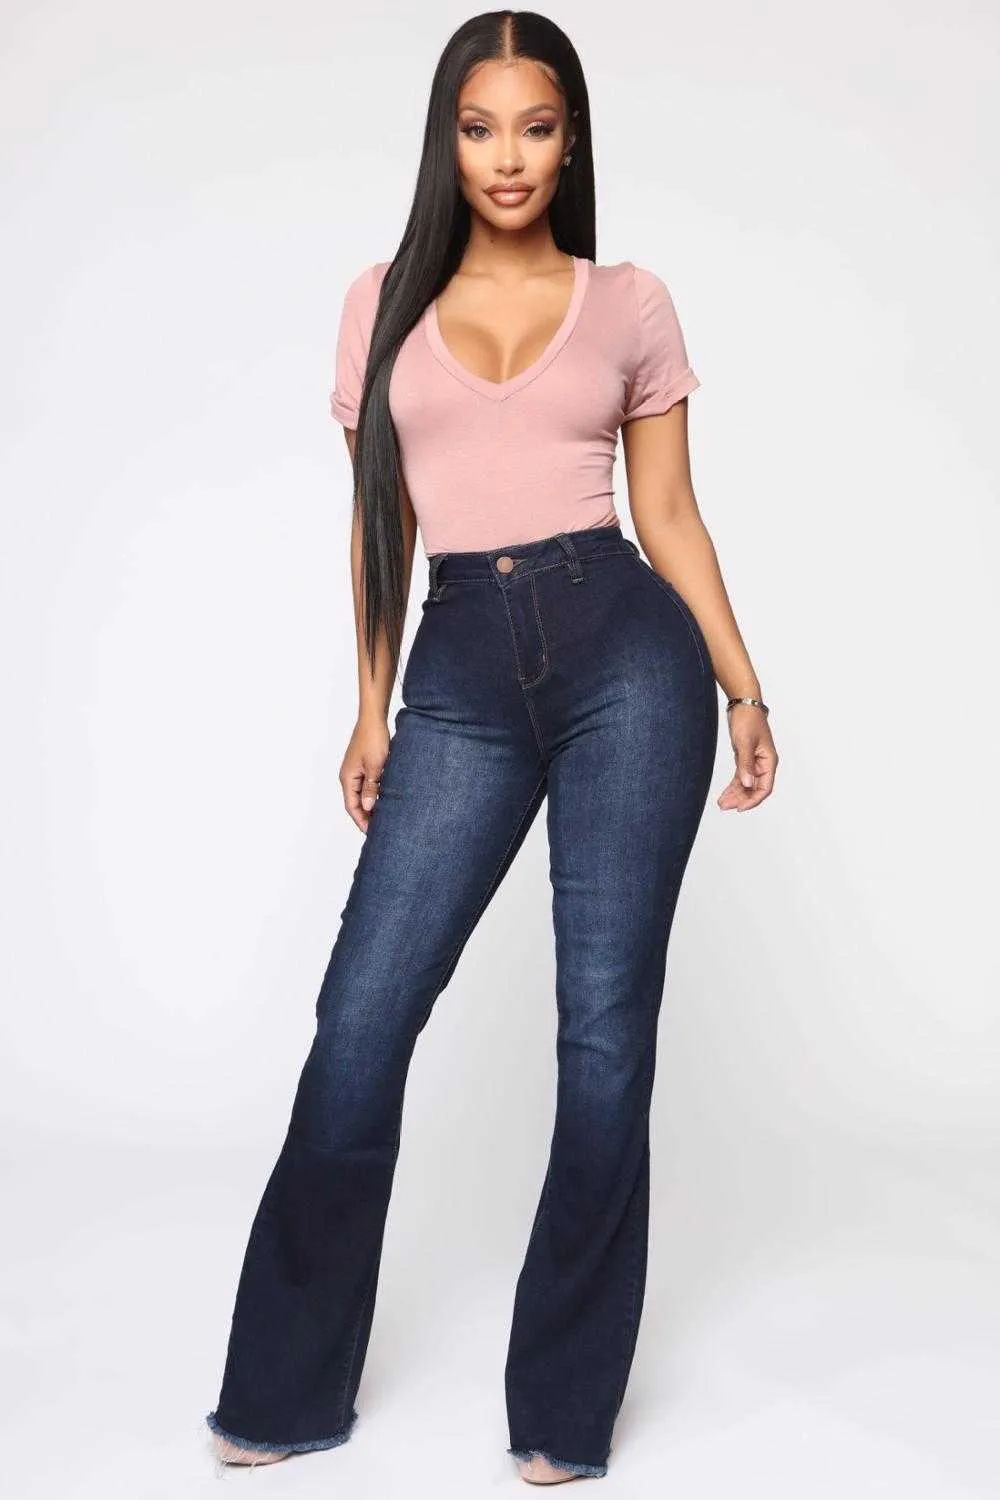 Jeans femininos jeans altas da cintura com elasticidade quadris apertados em calças de estilo sul -americano, pernas largas roupas da moda